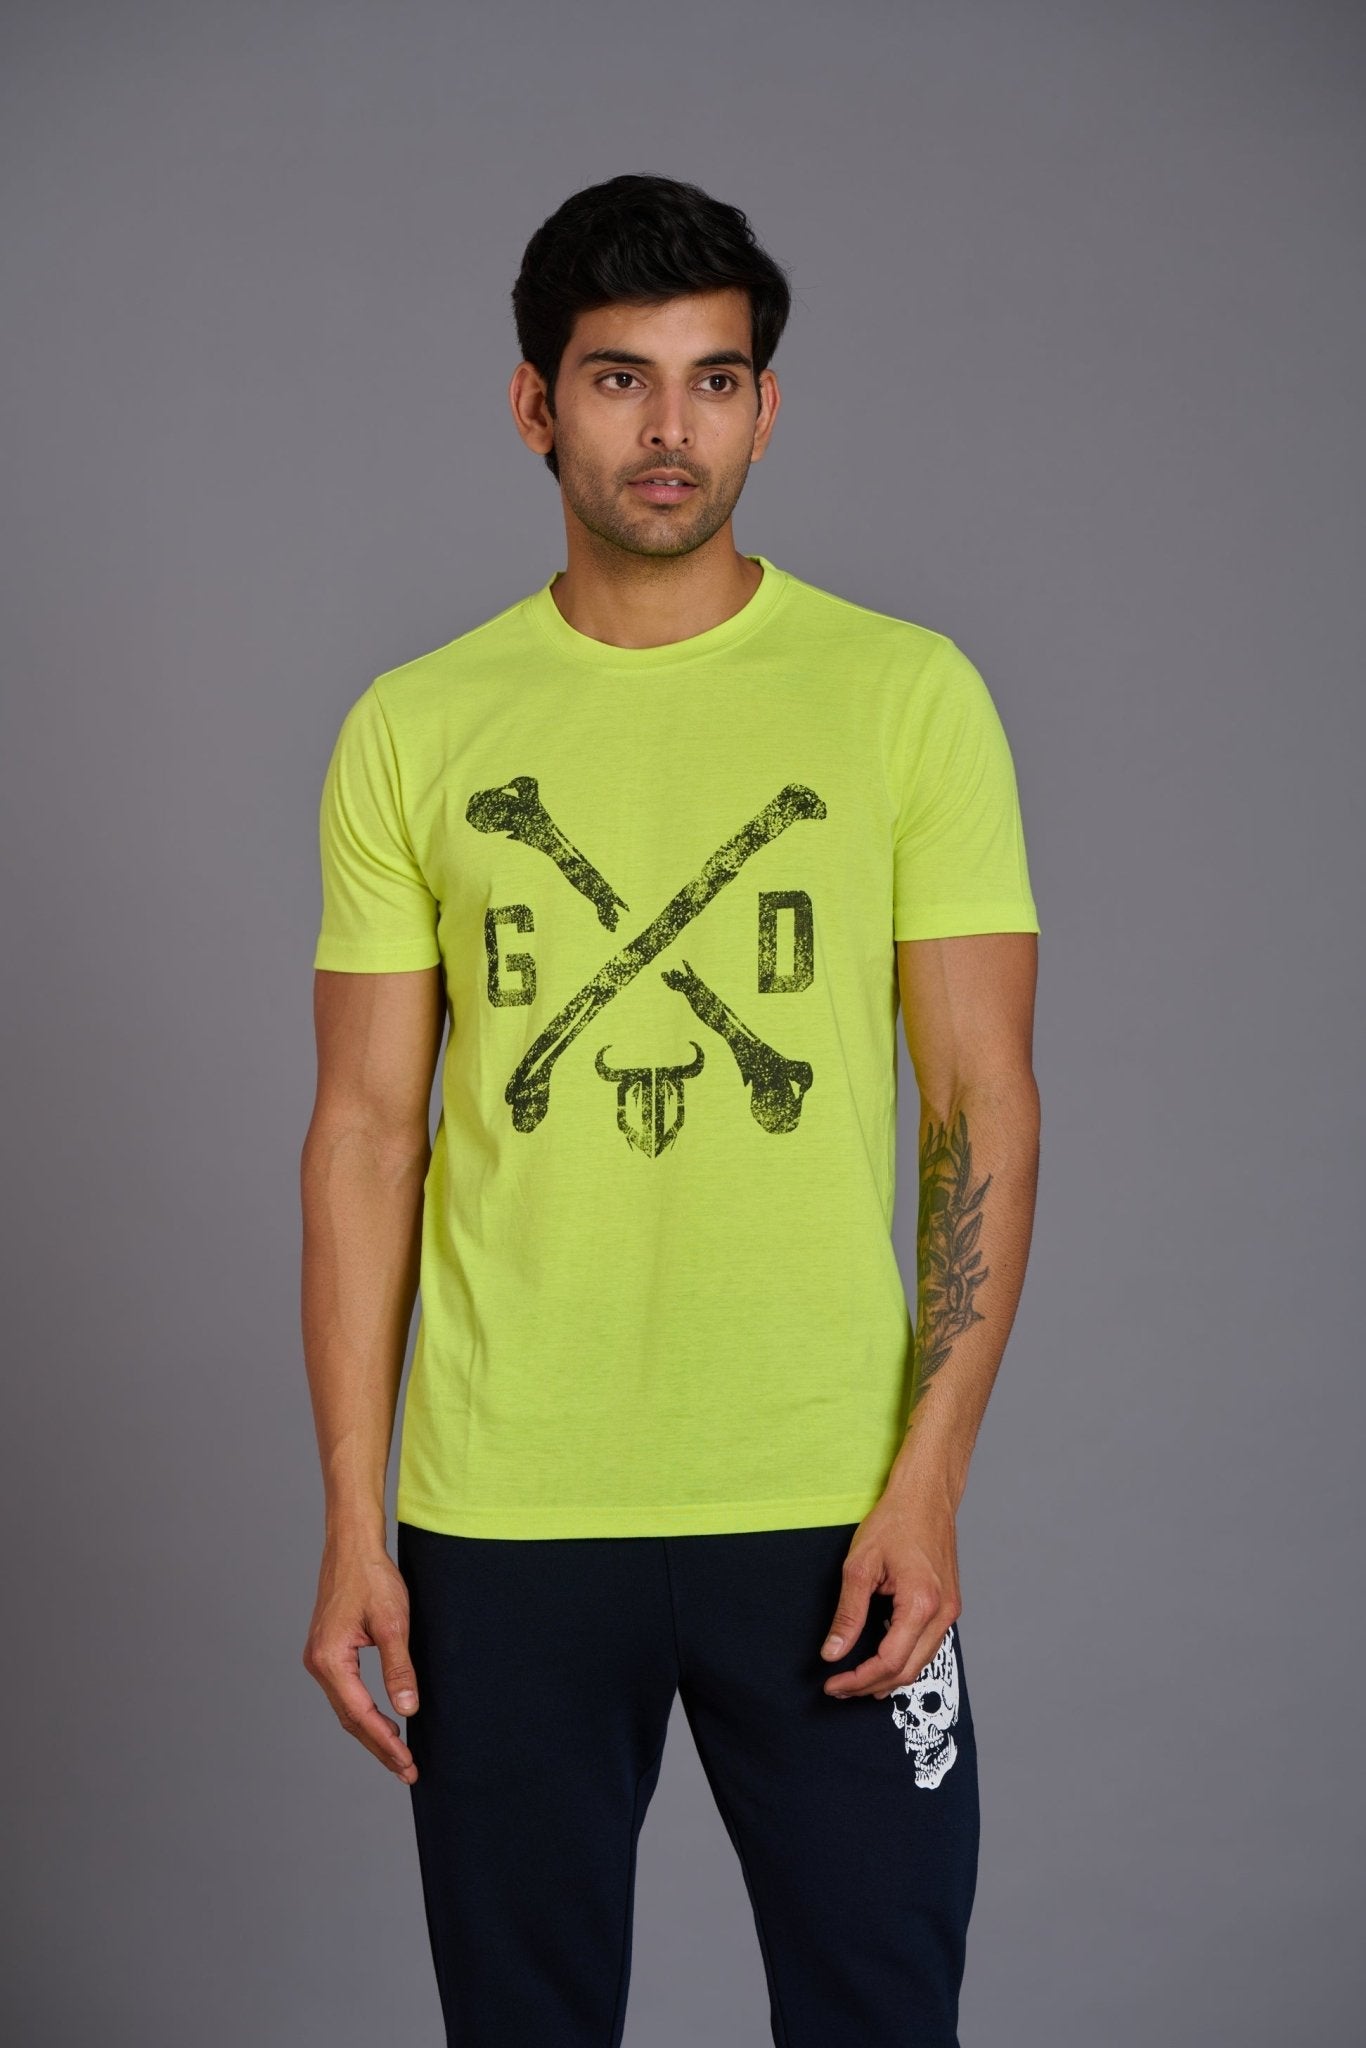 G/D Printed Green T-Shirt for Men - Go Devil